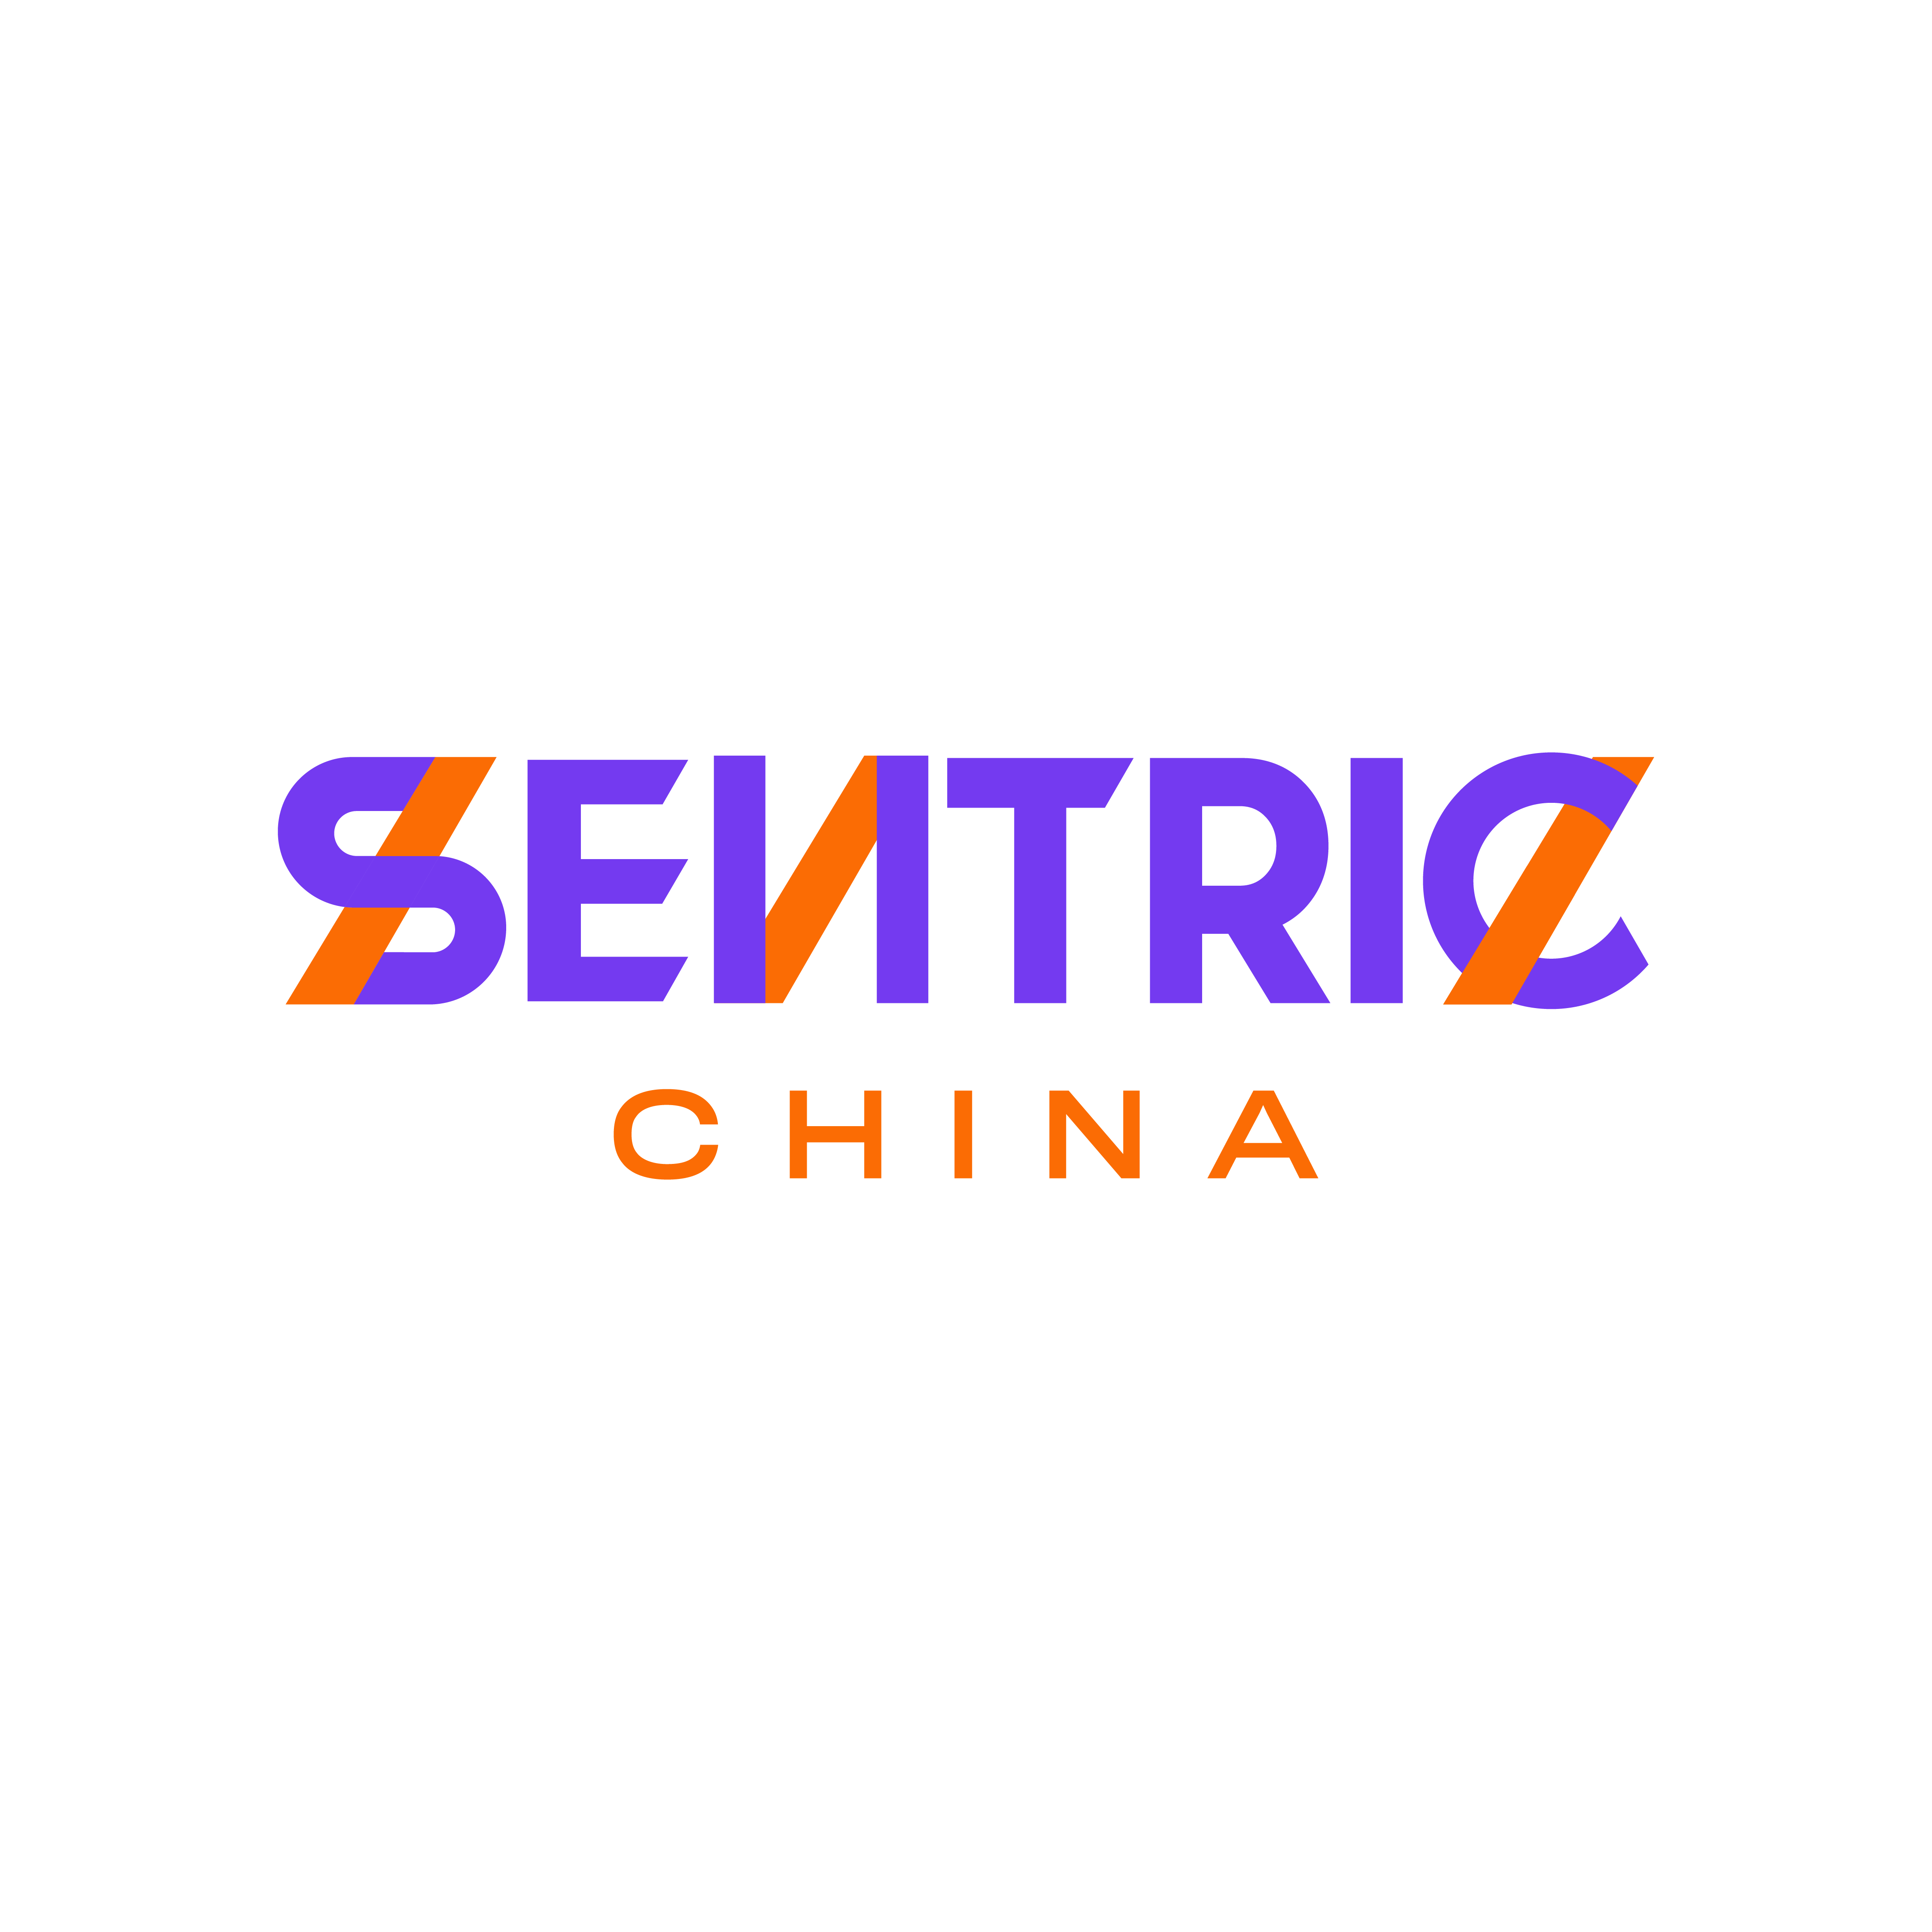 Sentric China Trading Company logo